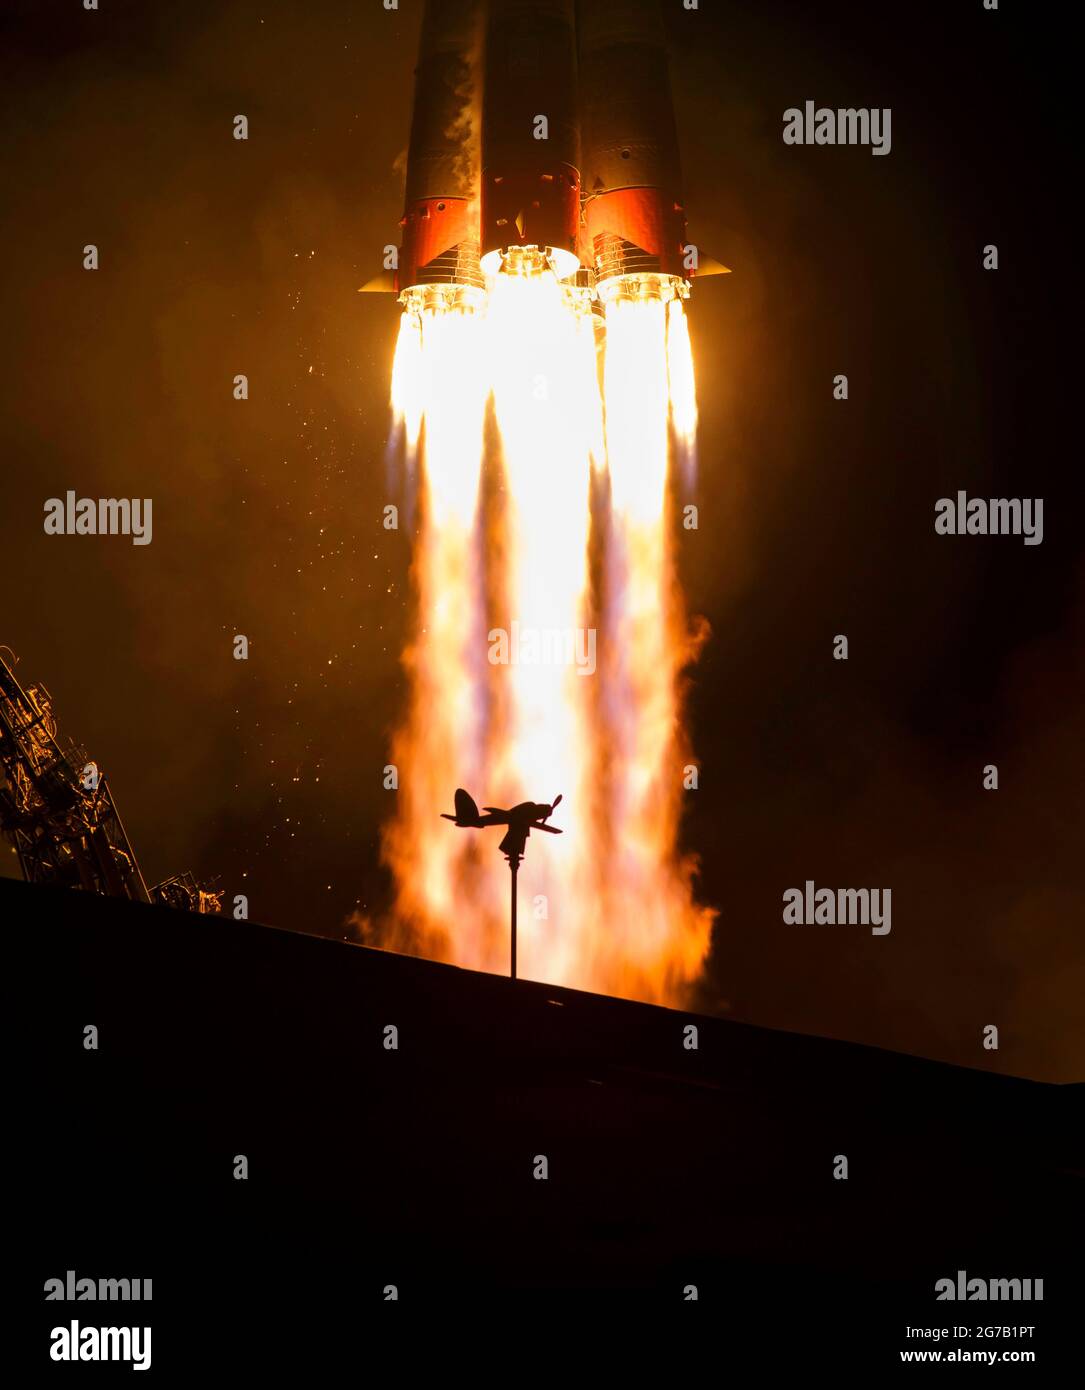 Le vaisseau Soyuz MS-12 est lancé avec les membres d'équipage de l'expédition 59 Nick Hague et Christina Koch de la NASA, ainsi qu'Alexey Ovchinin de Roscosmos, le 15 mars 2019, au Cosmodrome de Baikonour, au Kazakhstan. La Haye, Koch et Ovchinin passeront six mois et demi à vivre et à travailler à bord de la Station spatiale internationale. Une version unique, optimisée et numériquement améliorée d'une image de la NASA par le photographe principal de la NASA Bill Ingalis / Credit NASA Banque D'Images